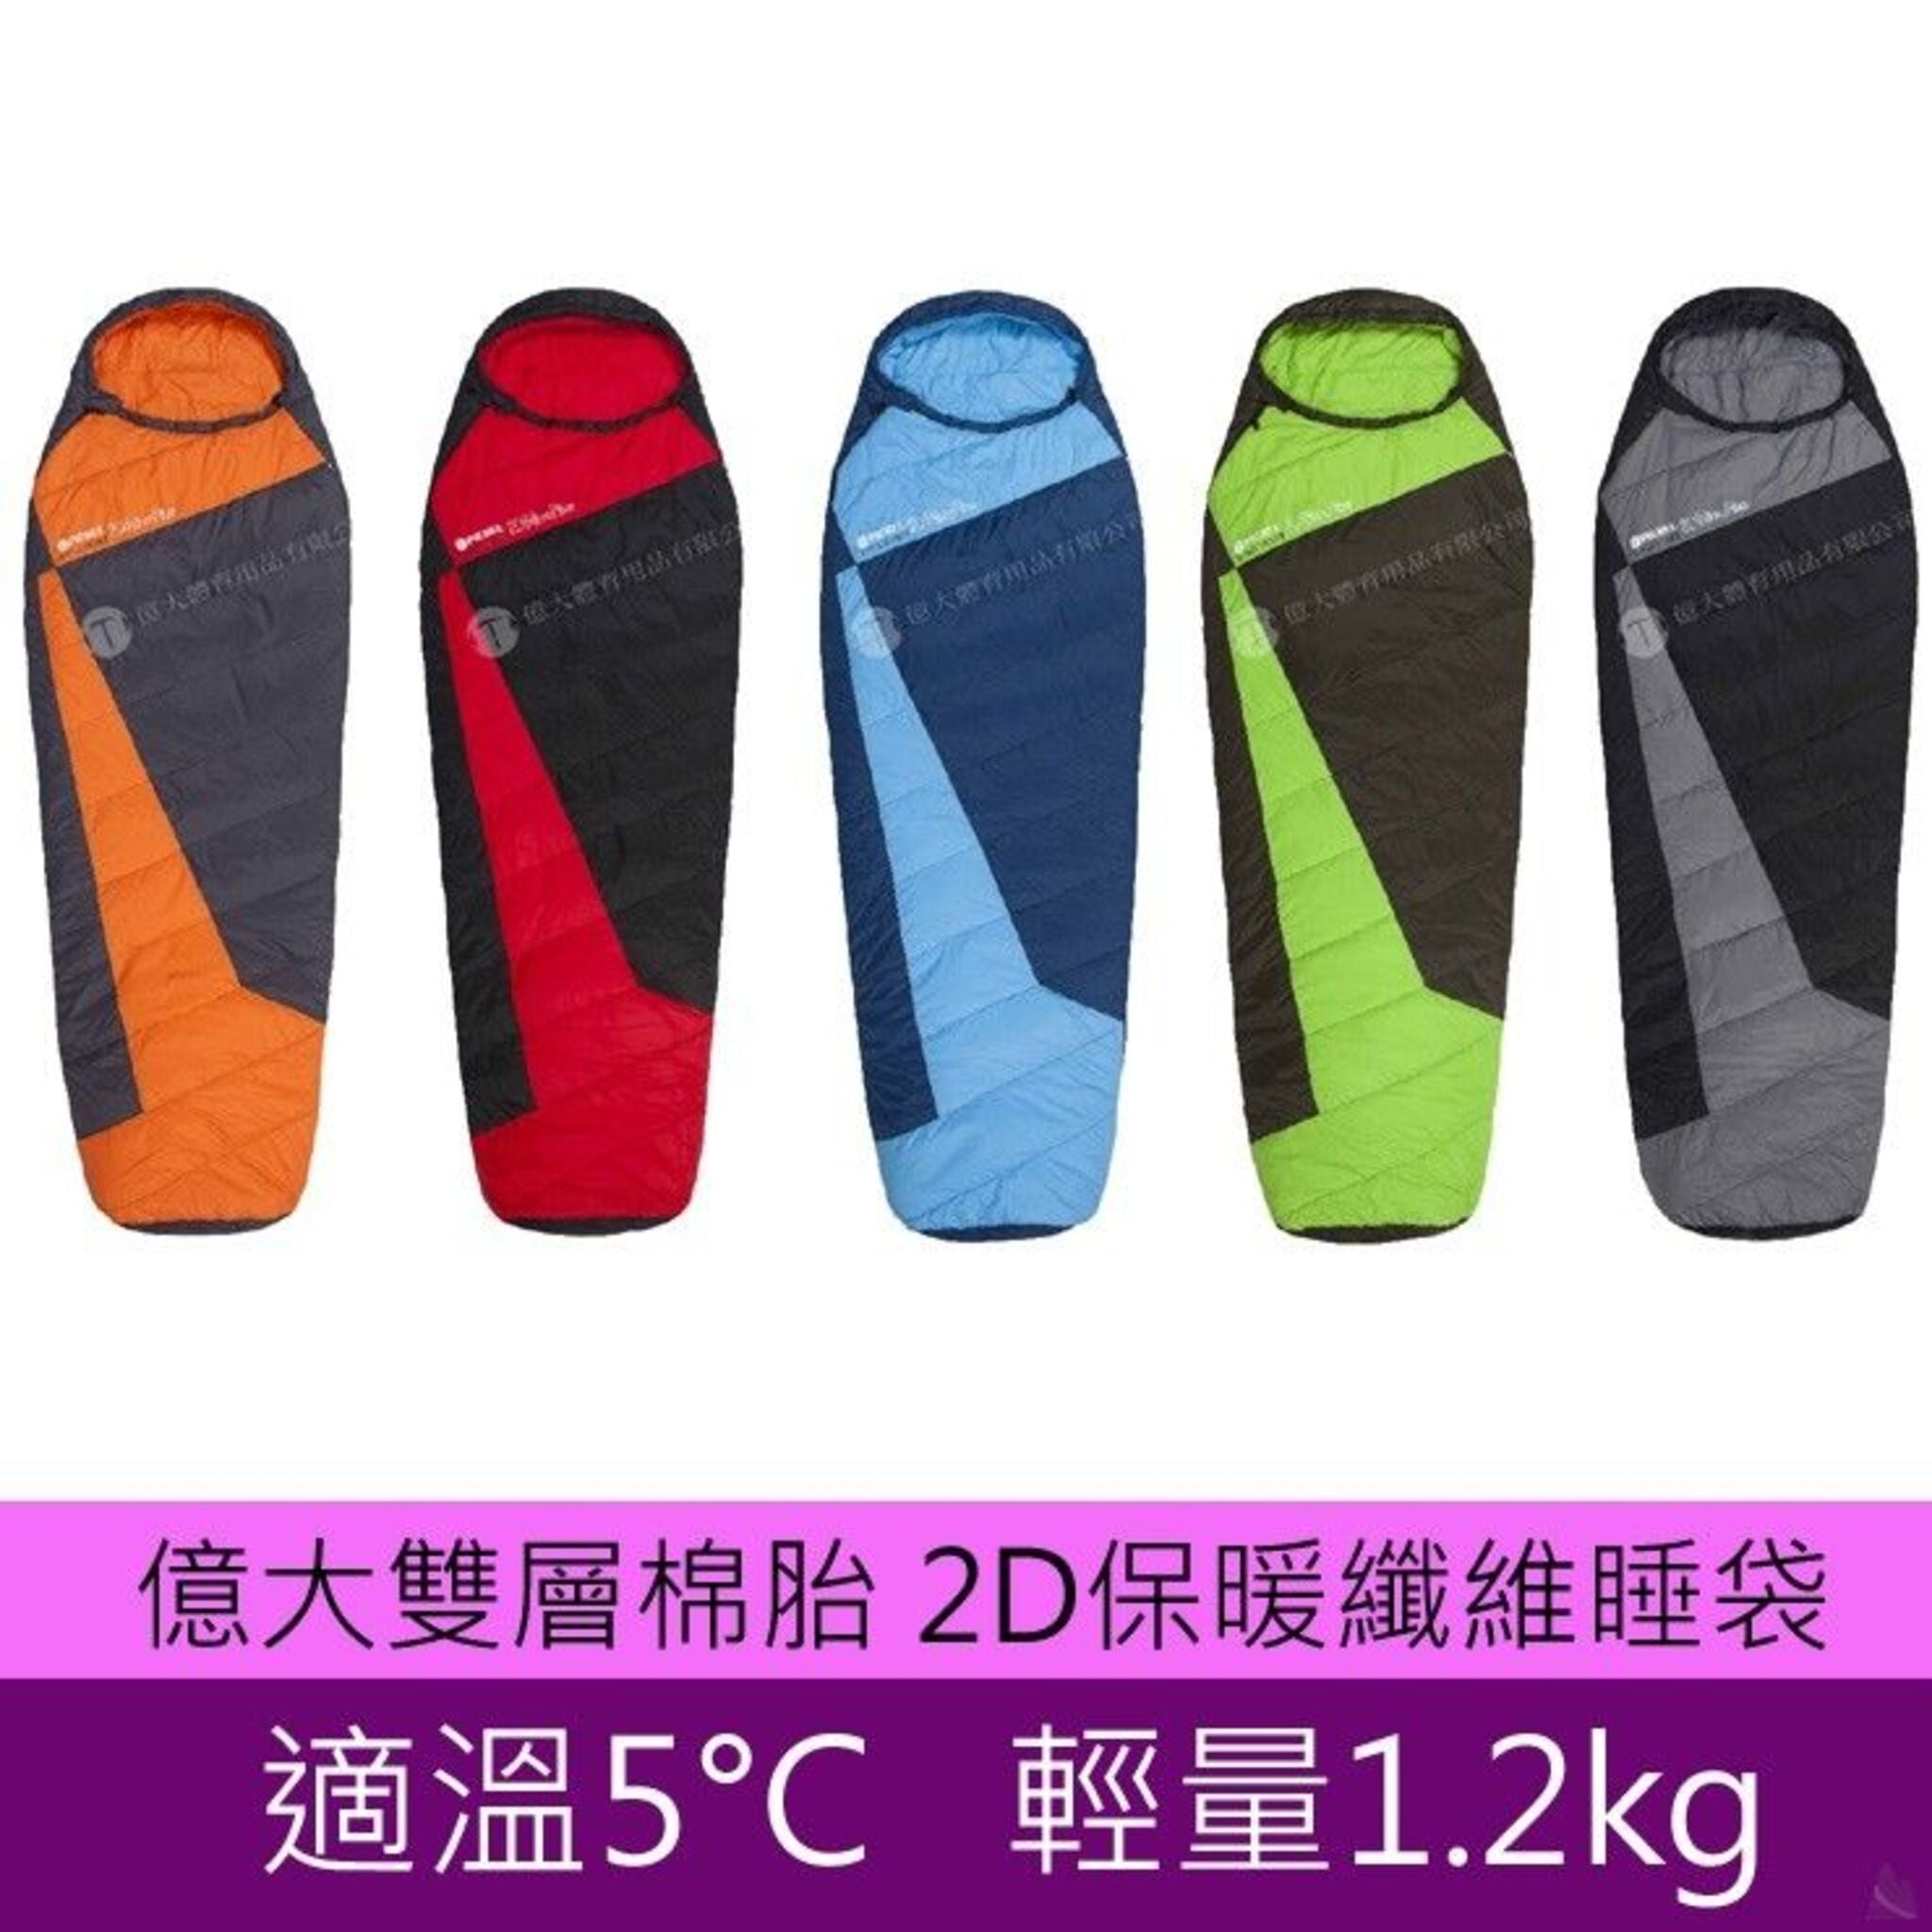 【超特價】Pickel 億大 雙層棉胎2D保暖纖維睡袋5°C適溫 H306D